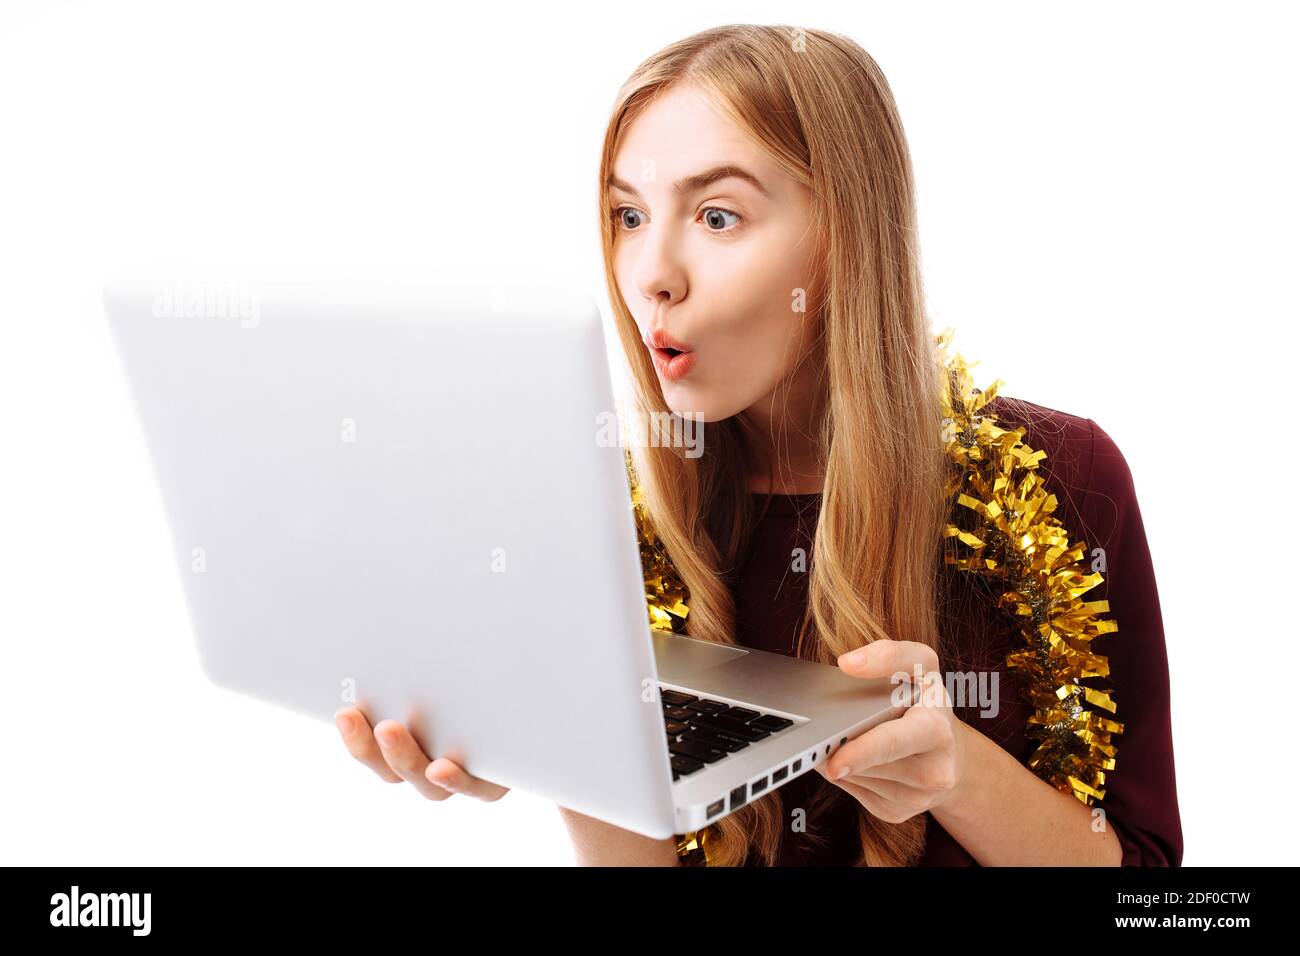 Schockiert, nutzt das Mädchen im roten Kleid den Laptop und schaut überrascht auf den Laptop-Bildschirm, auf weißem Hintergrund. Stockfoto